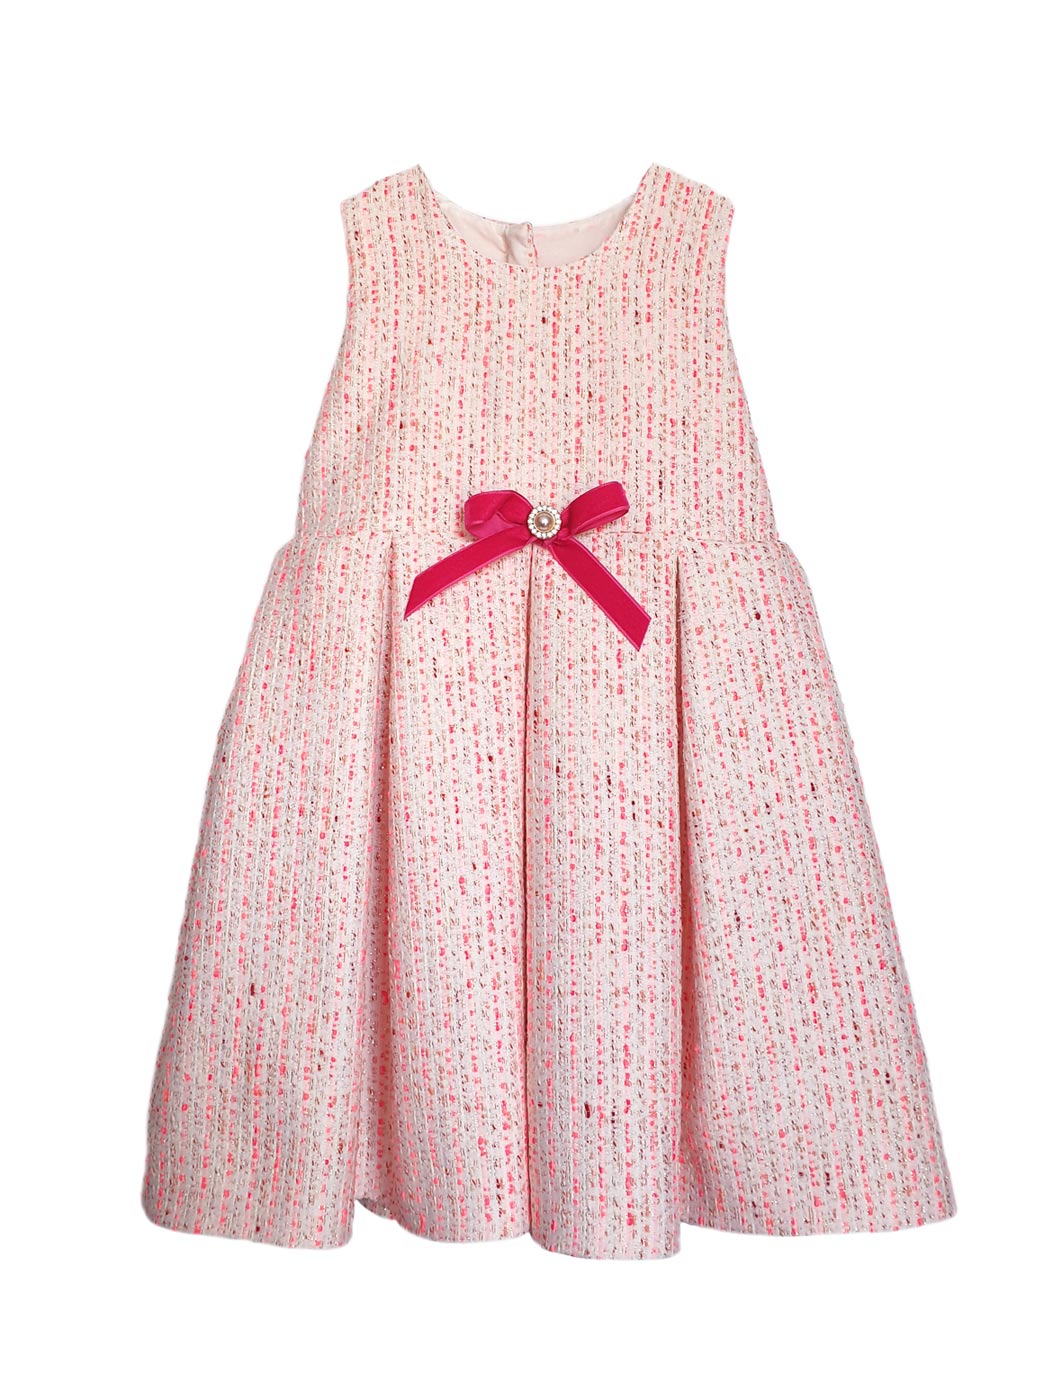 Βρεφικό Φόρεμα σε γραμμή-Α με φιόγκο - AVRIL Ροζ-Φούξια